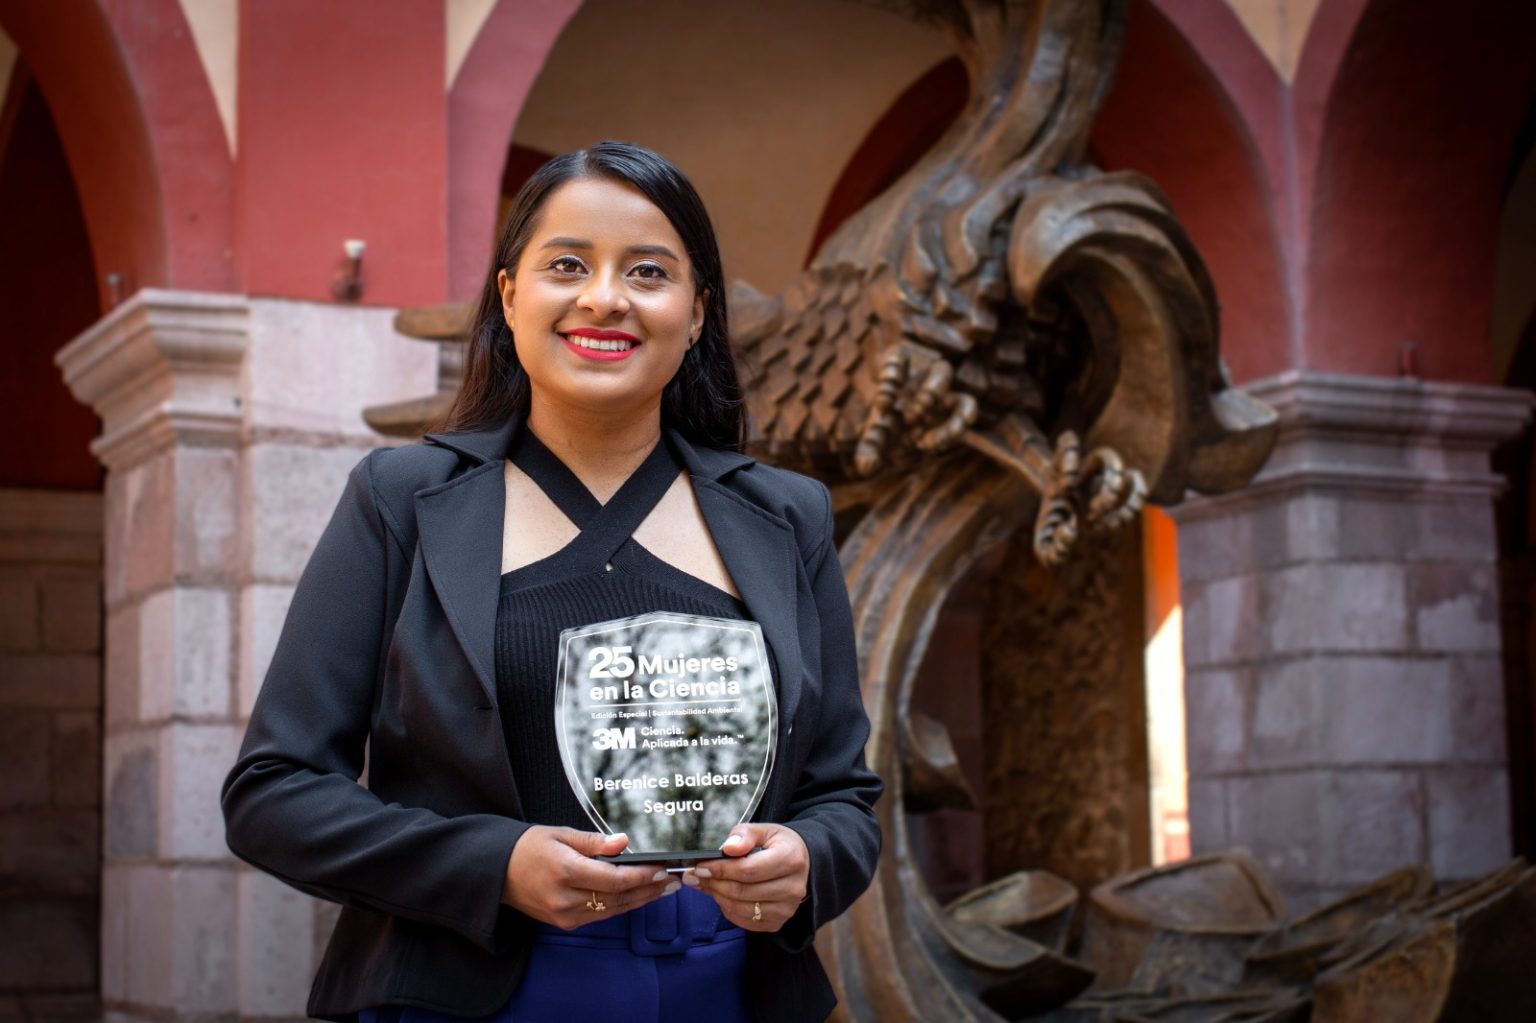 Estudiante de la UASLP gana premio de 3M por investigación en sustentabilidad ambiental